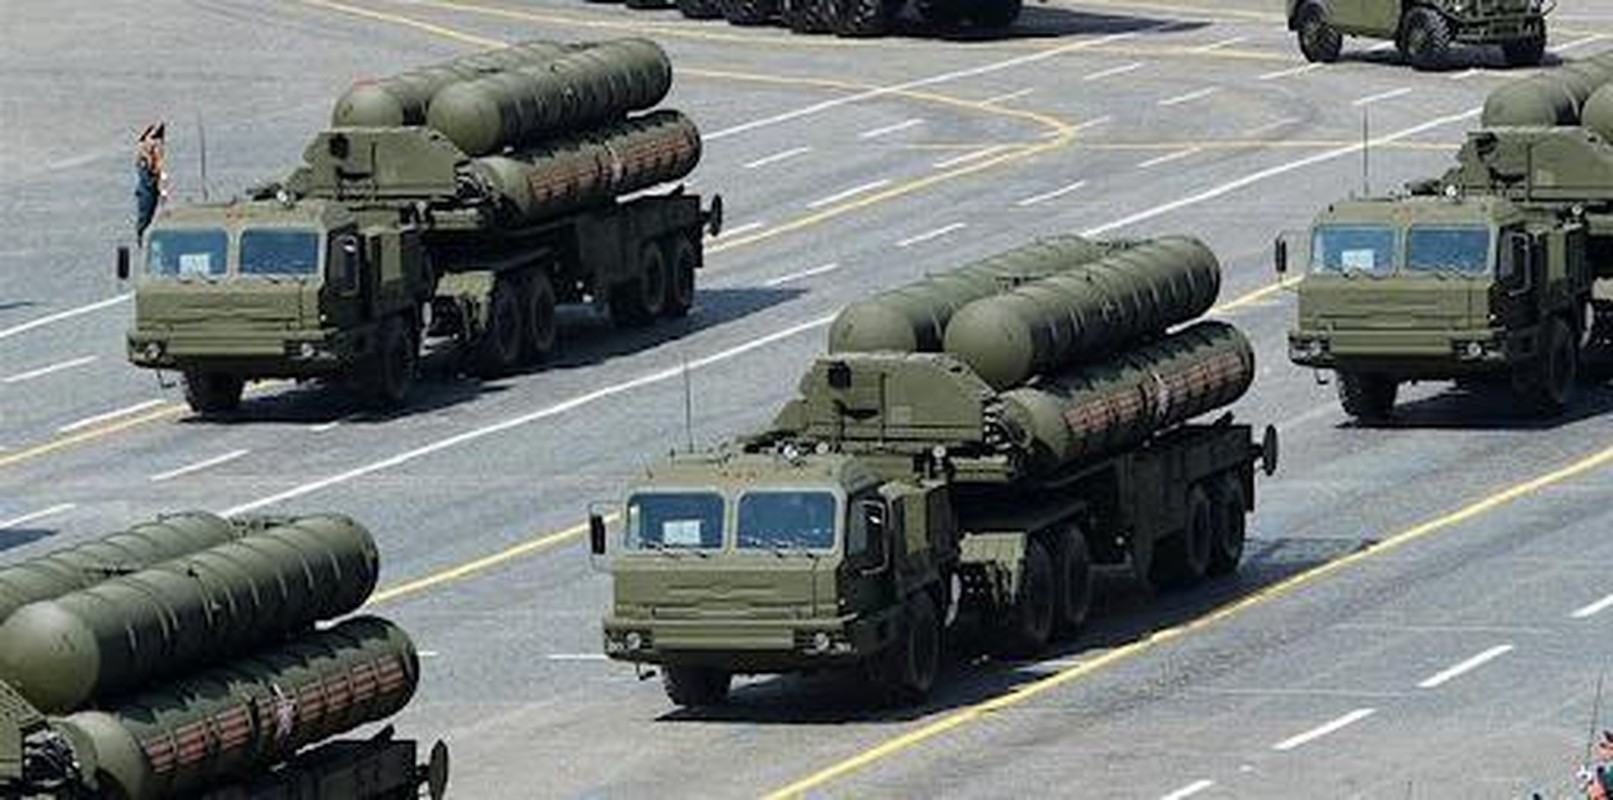 Buoc di 'tinh te' cua Nga khien khong phan nhieu nuoc NATO bi khoa-Hinh-22